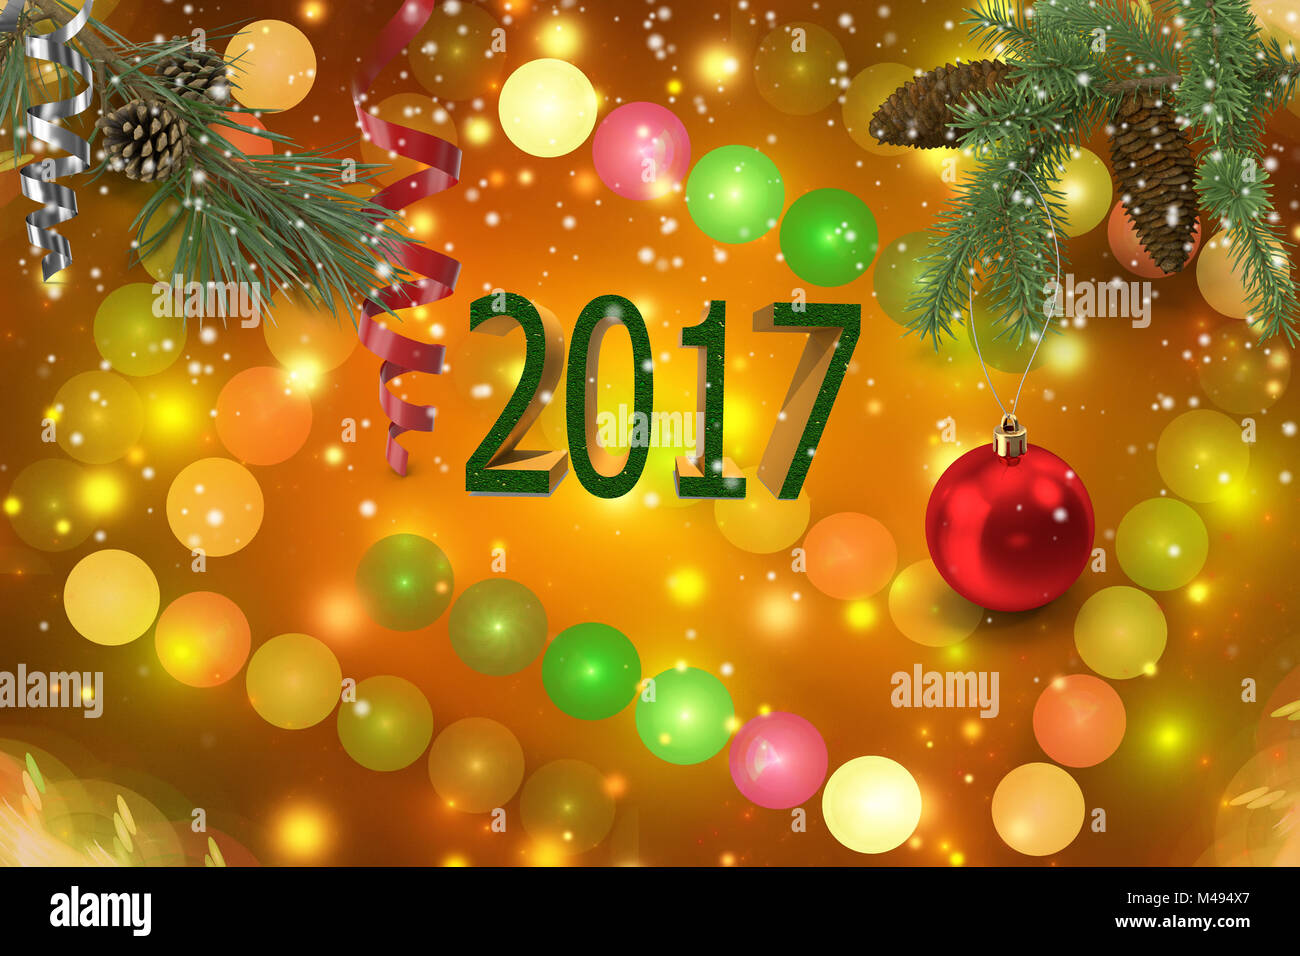 Congratulazioni con il Natale e il nuovo anno 2017. Foto Stock